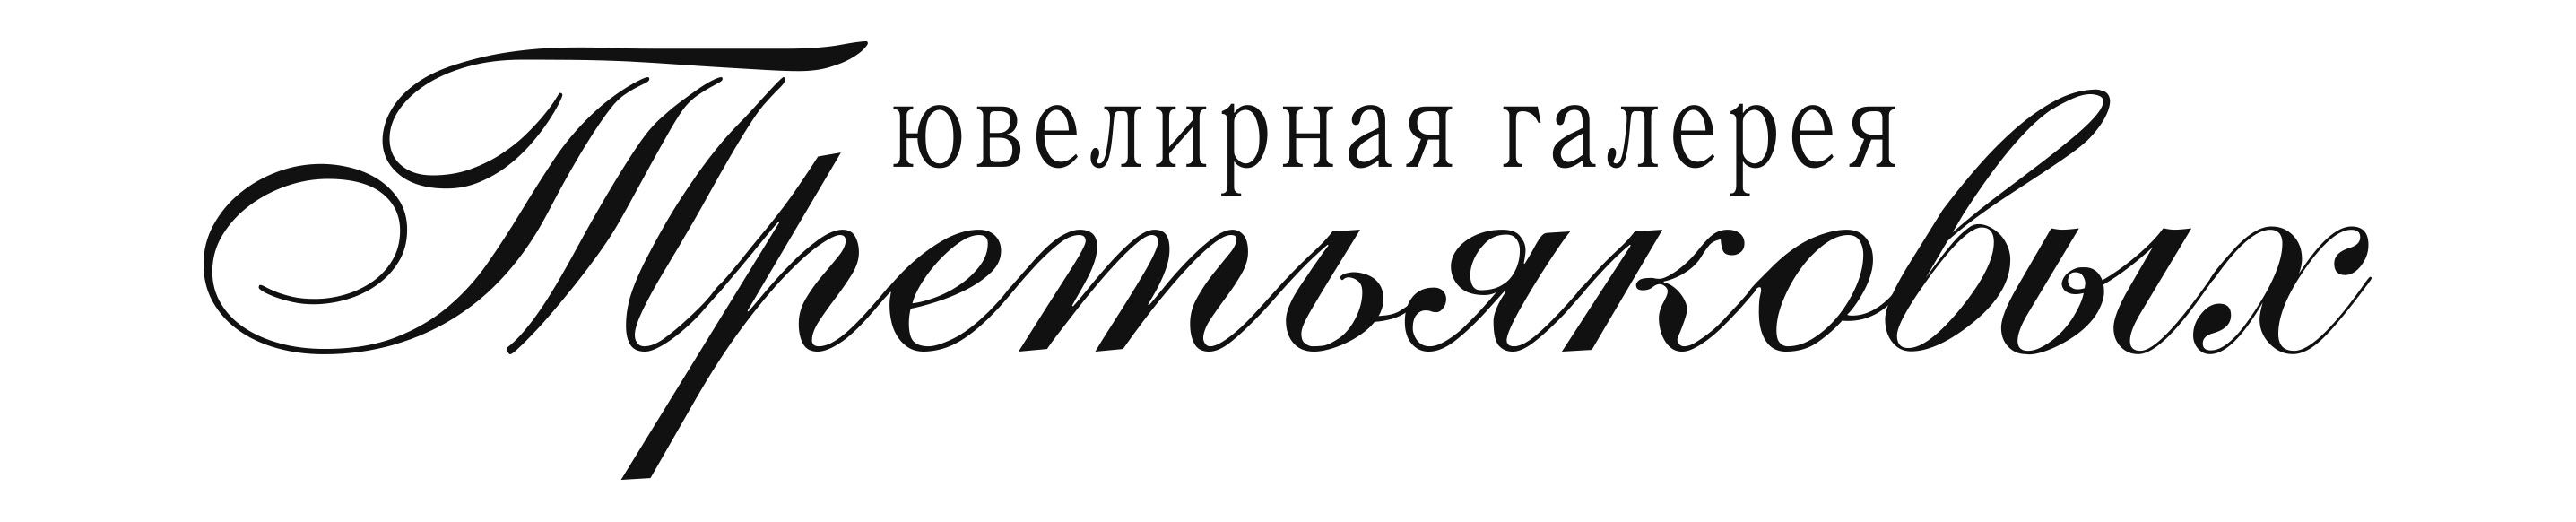 Ювелирная галерея Третьяковых: отзывы от сотрудников и партнеров